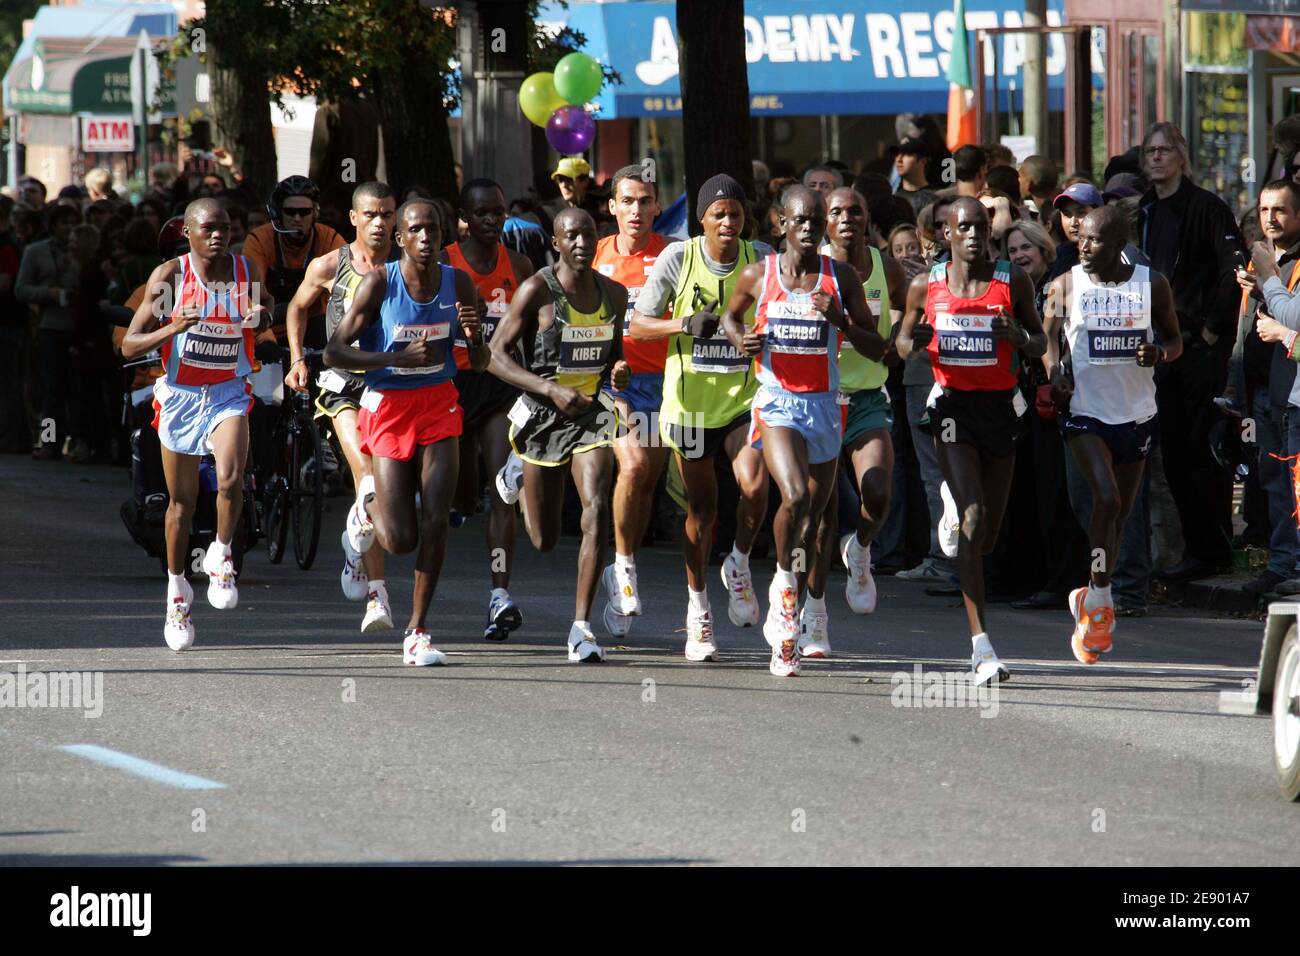 Die Teilnehmer laufen während des New York City Marathon in New York City, NY, USA am 4. November 2007. Die britische Weltrekordlerin Paula Radcliffe gewann die Frauen mit einer Zeit von 2:23:09 vor Wami (2:23:32), während der Kenianer Martin lel das Herrenrennen in 2:09:04 gewann. Foto von CAU-Guerin/Cameleon/ABACAPRESS.COM Stockfoto